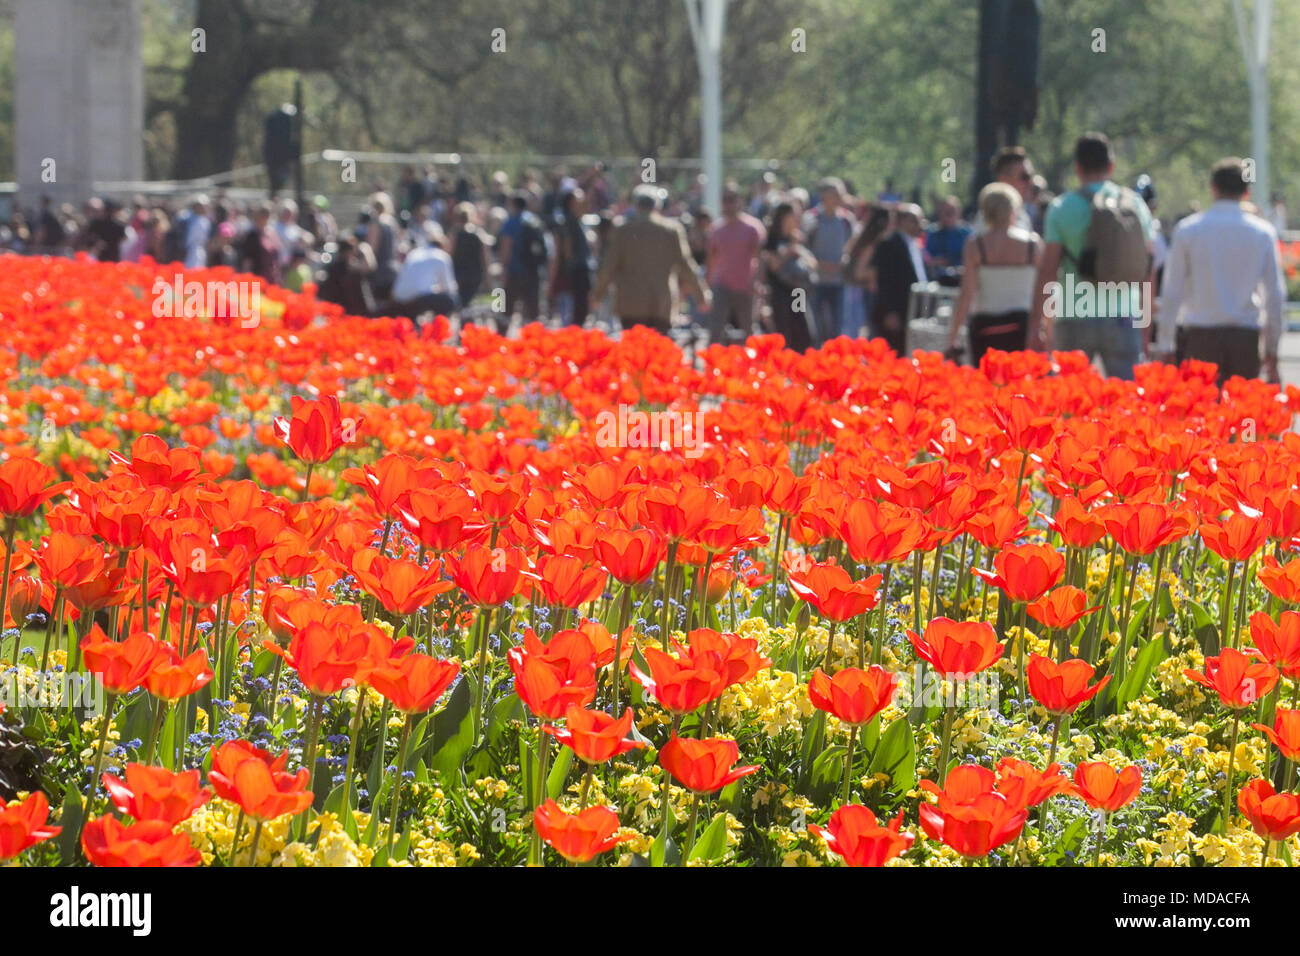 Londra REGNO UNITO. Il 19 aprile 2018. Regno Unito Meteo: pedoni a piedi passato un letto di tulipani rossi bagnata dal sole primaverile di fronte a Buckingham Palace. Oggi è stato il giorno più caldo dell'anno Credito: amer ghazzal/Alamy Live News Foto Stock